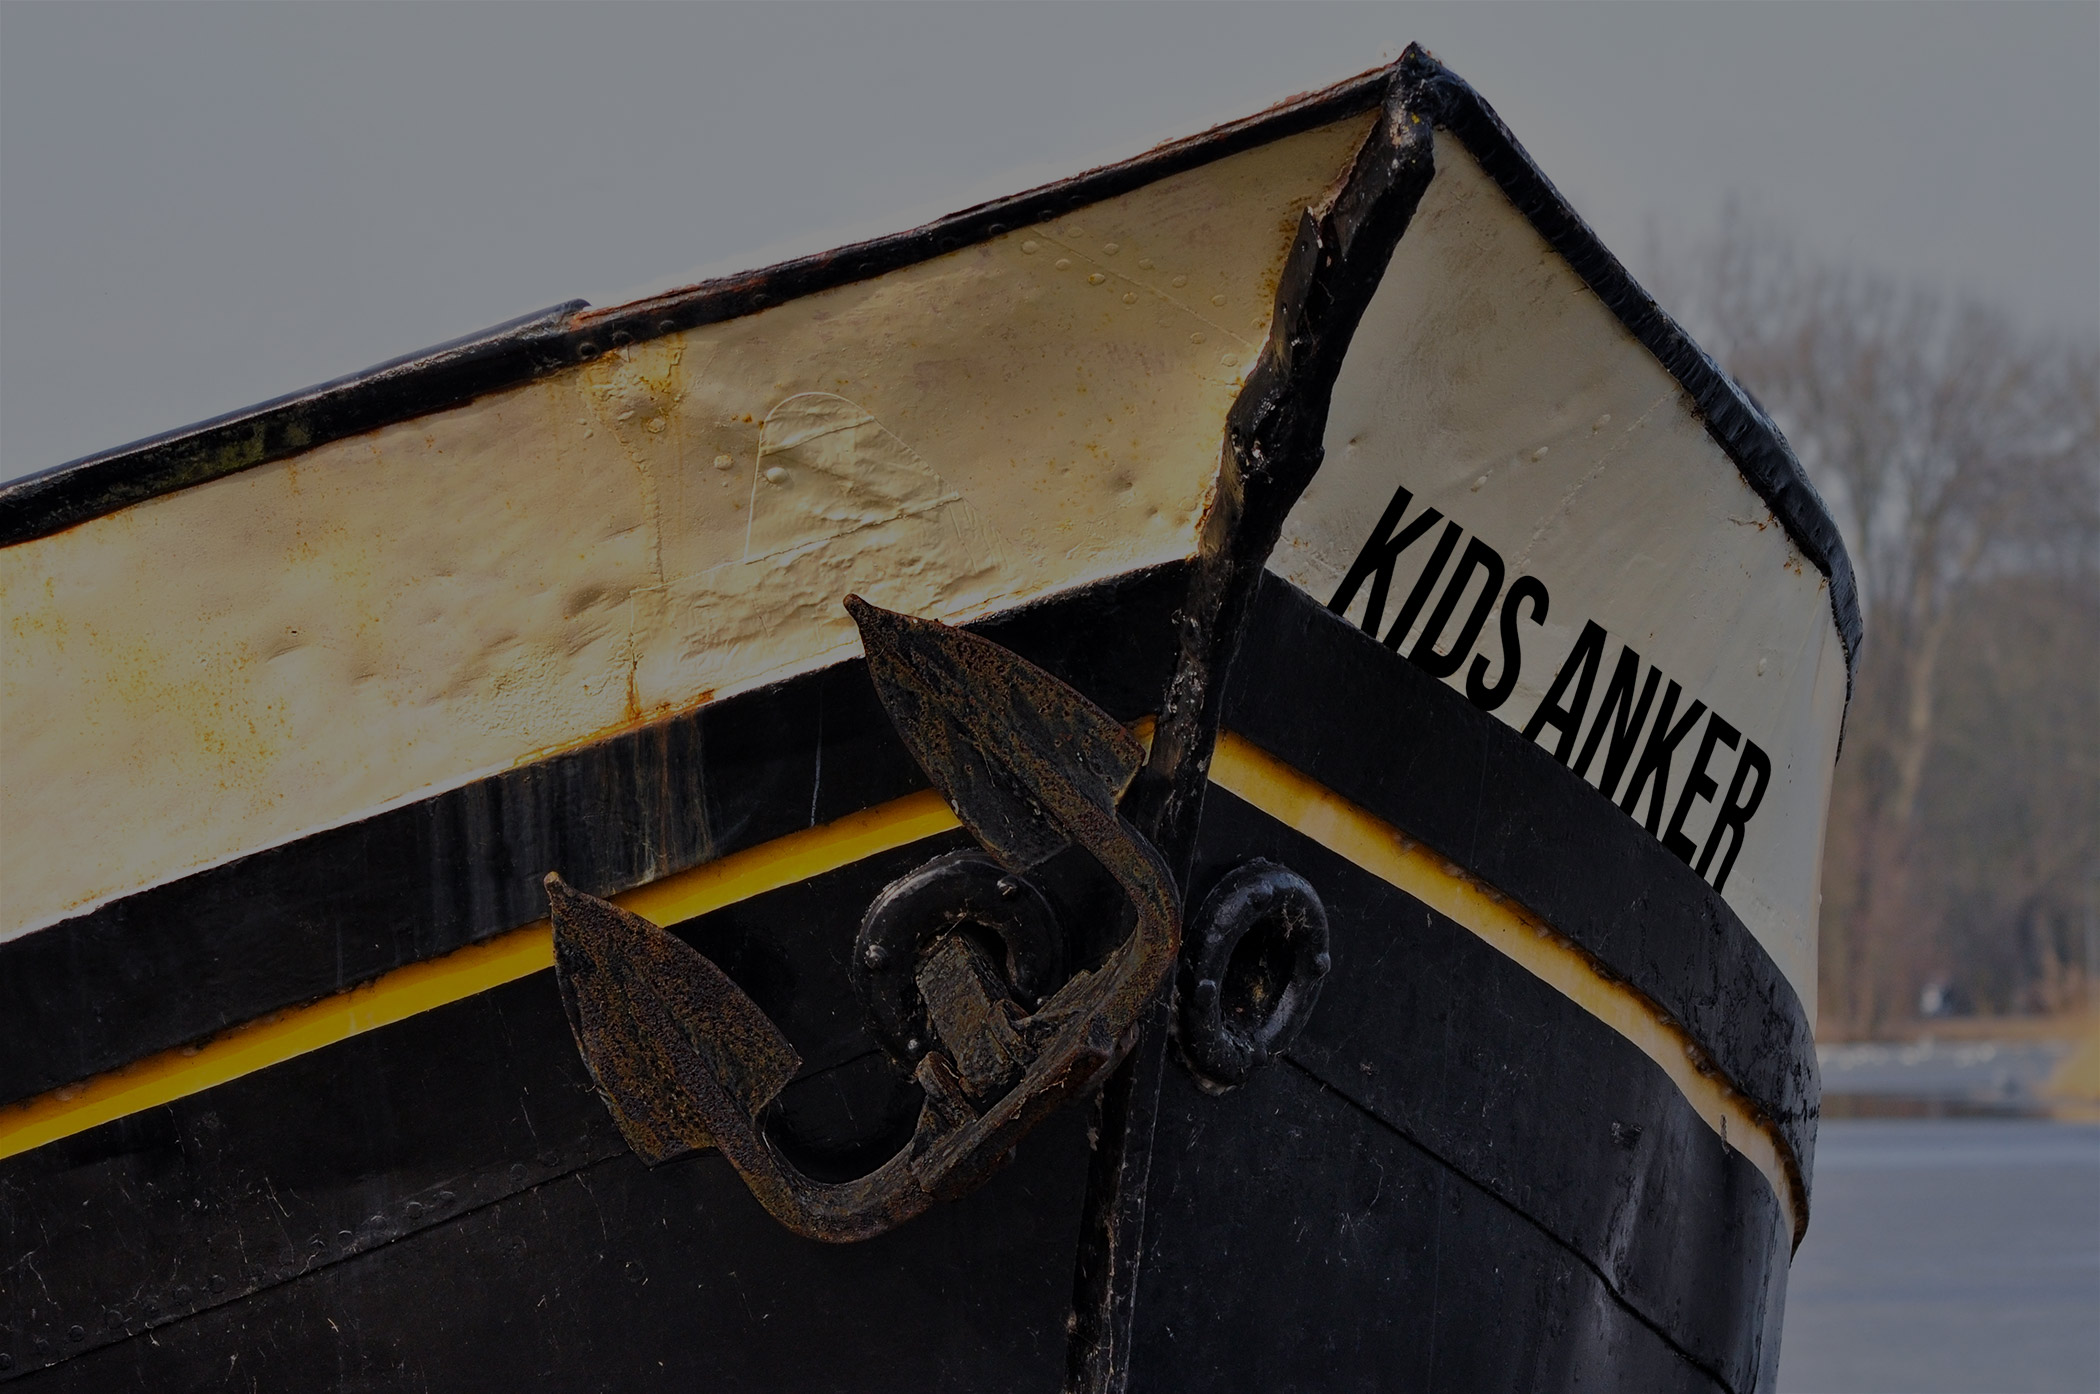 Der Bug eines Schiffes ist zu sehen, an dem ein Anker hängt. Auf dem Boot steht „Kids Anker“